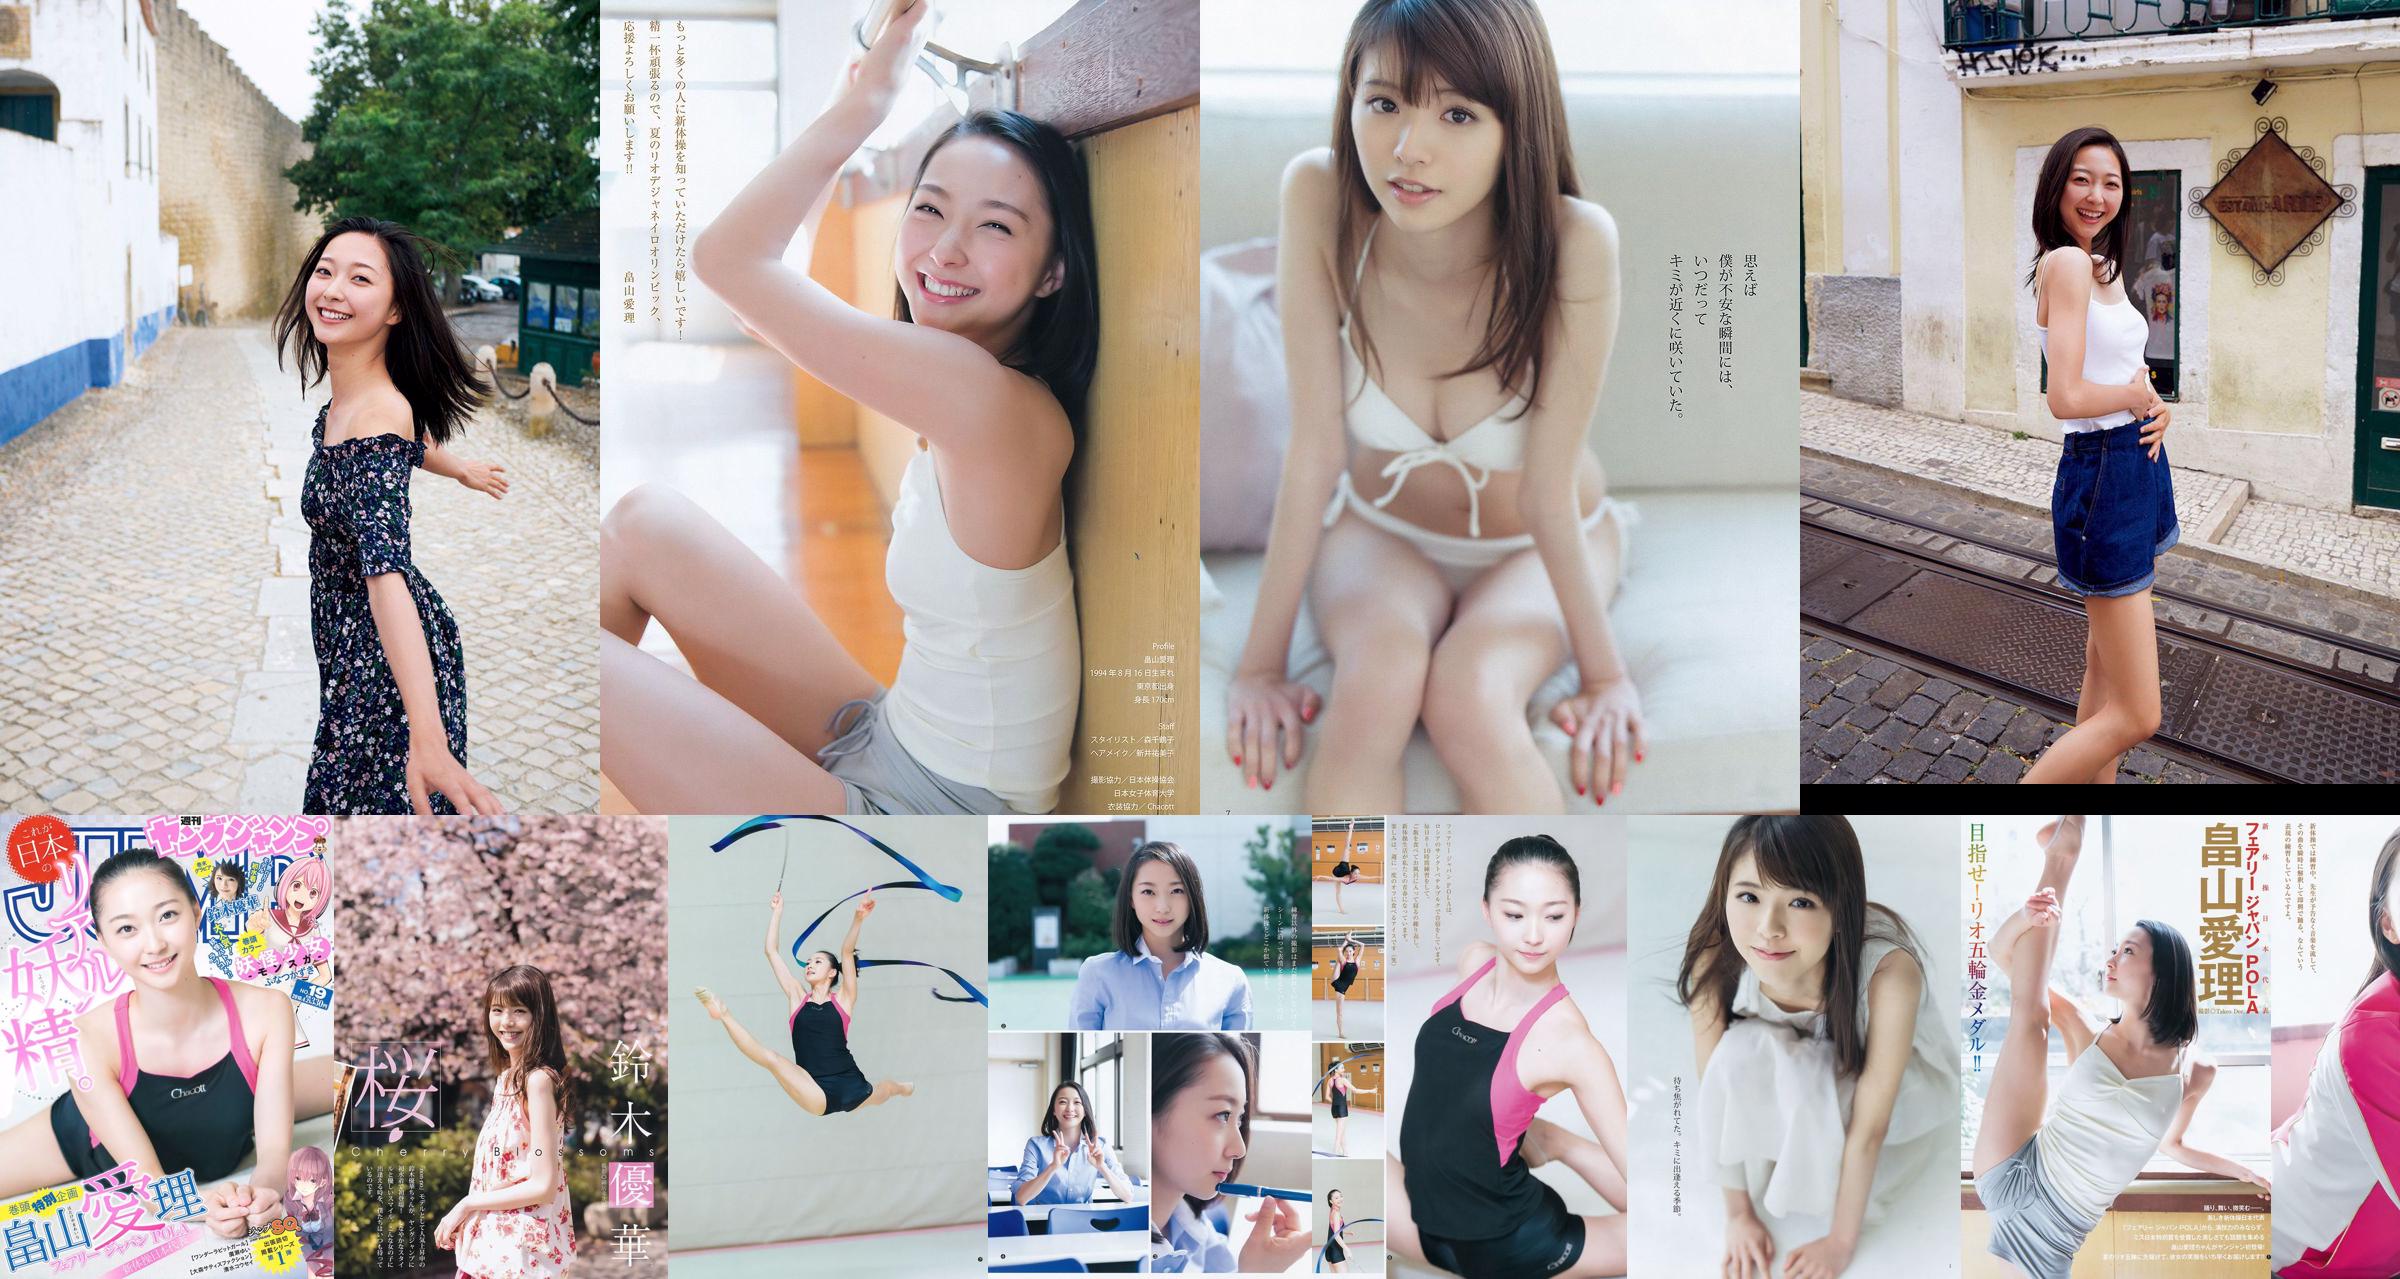 [ENTAME] Mai Shiraishi Nanase Nishino Rena Shimada Yui Takano Fotografia numero marzo 2014 No.9d71a8 Pagina 1